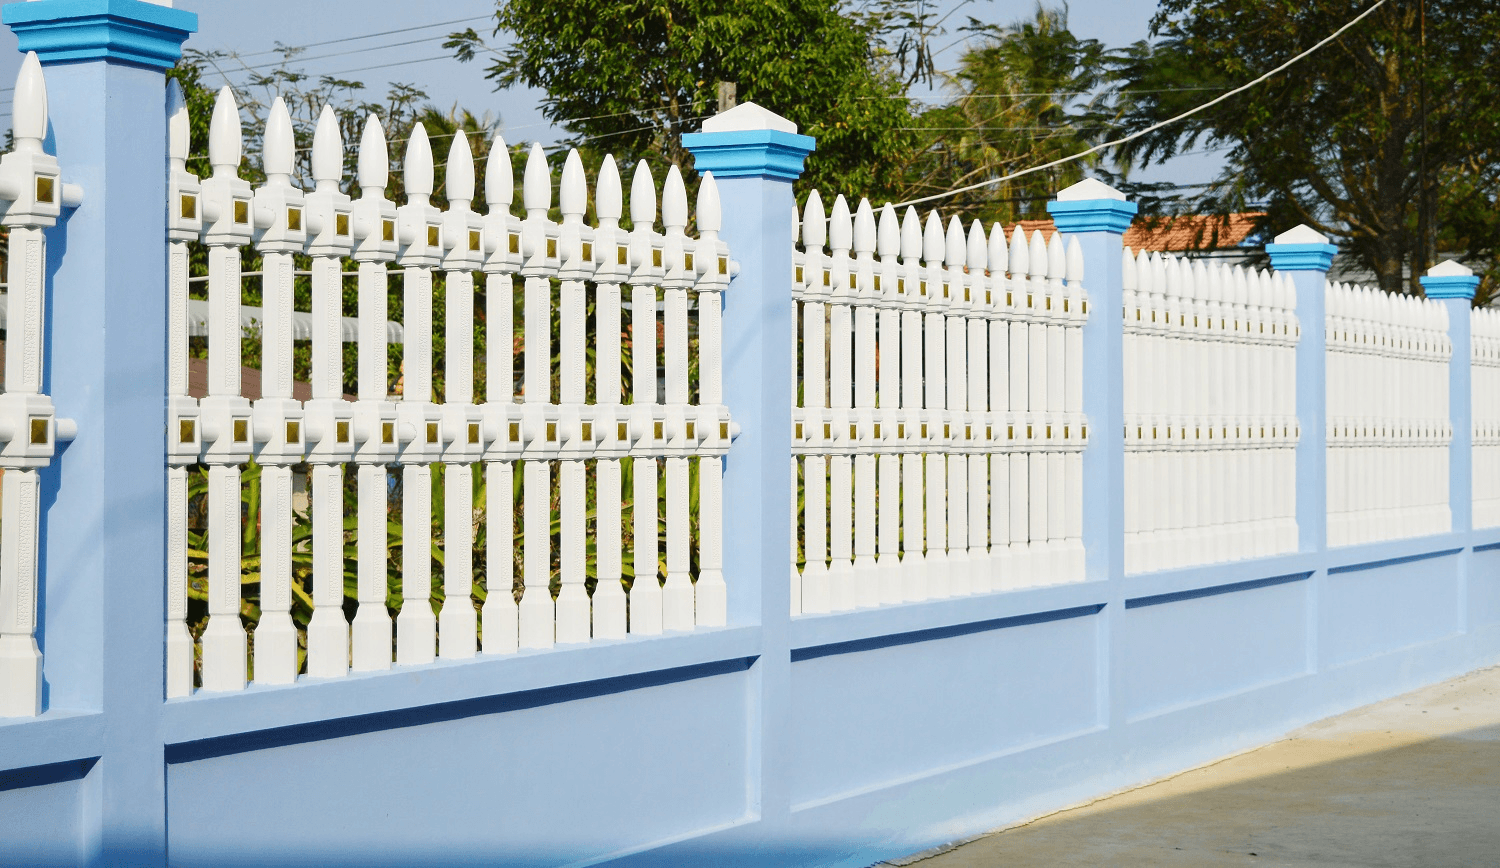 Màu sơn tường rào phong thủy giúp cho gia chủ luôn được bình an và may mắn. Hãy khám phá sự kết hợp hoàn hảo giữa màu sơn và phong thủy để tạo nên môi trường sống tốt cho gia đình bạn. Đặc biệt, màu sơn còn mang đến tính thẩm mỹ cao, đem lại sự tinh tế và sang trọng cho ngôi nhà.